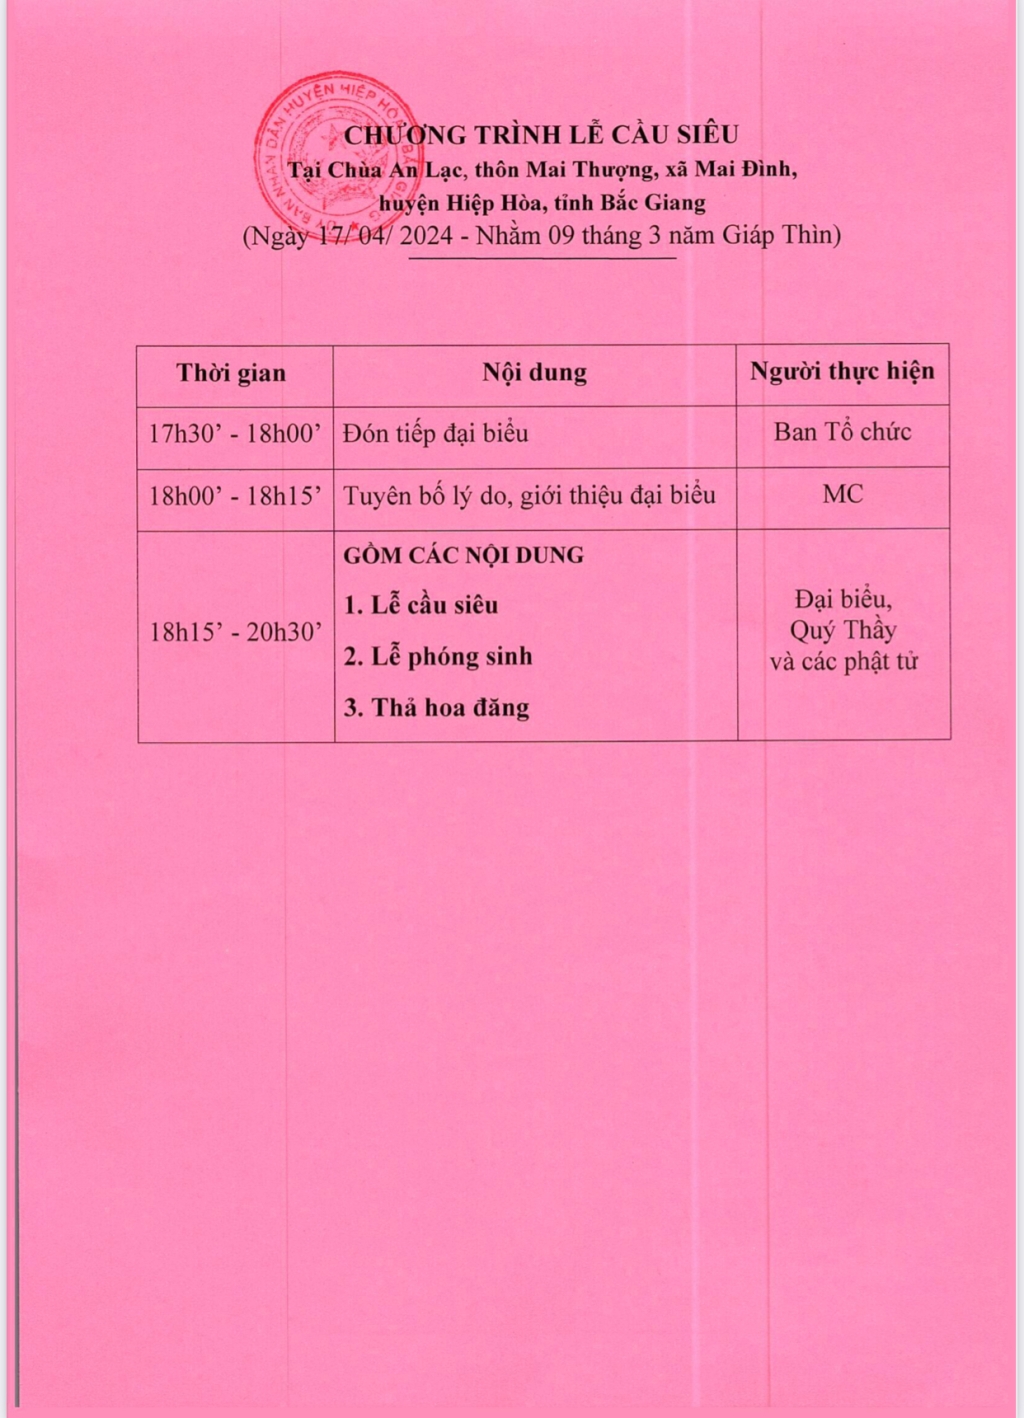 Chương trình lễ cầu siêu- Trai đàn chẩn tế tại chùa An lạc ( Mai Thượng, xã Mai Đình 17 giờ 30  ngày 17/4-Tức 9/3 Giáp Thìn 2024)